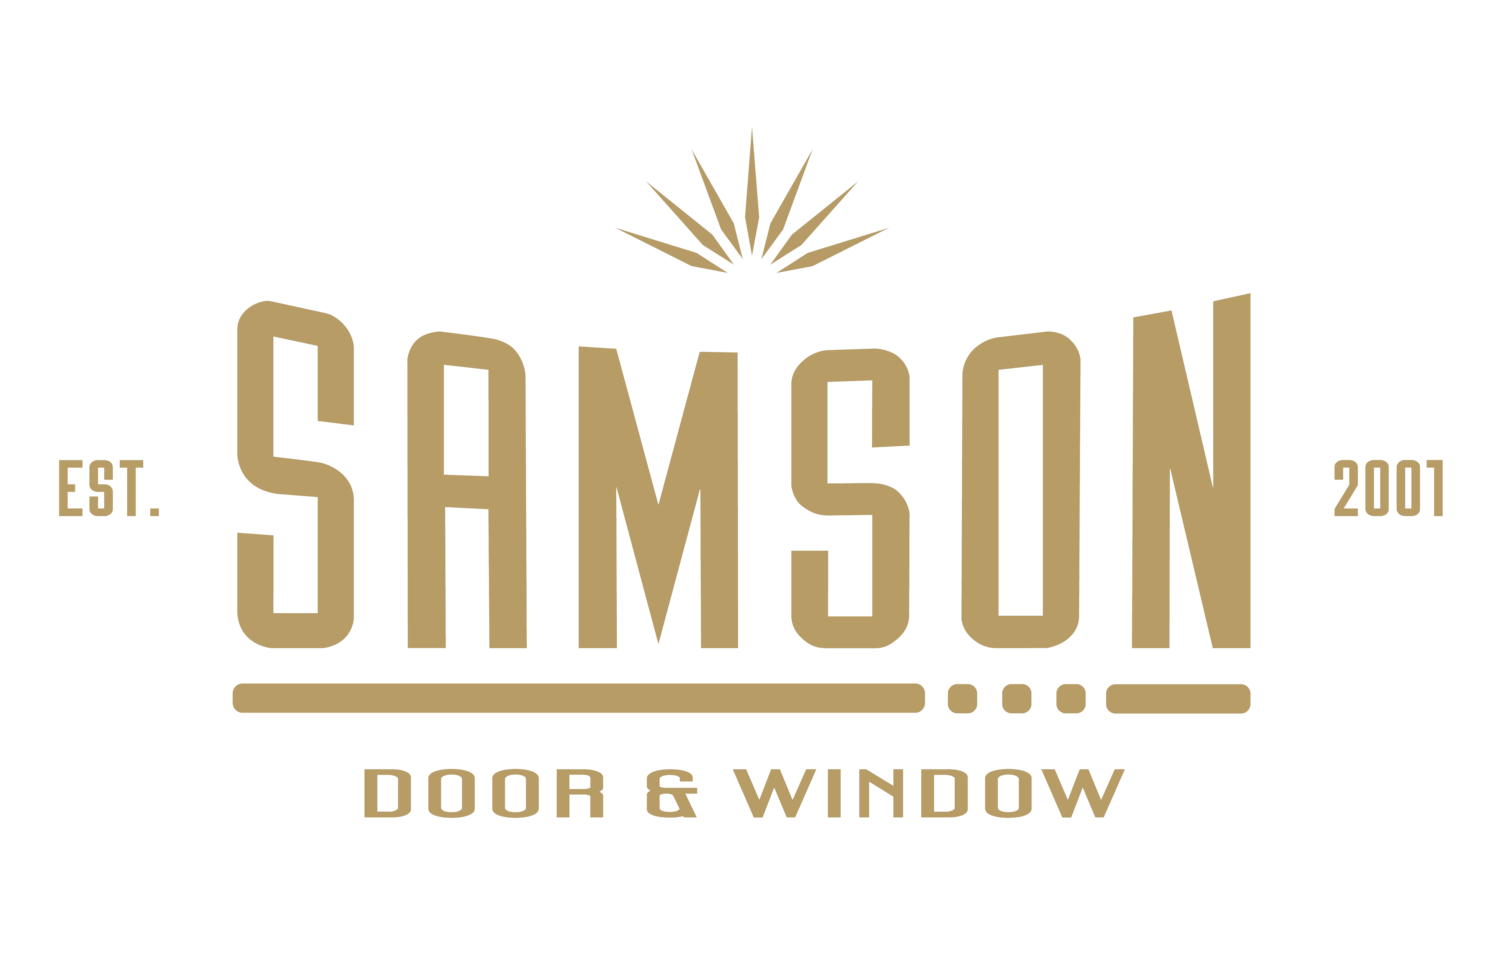 Samson Door & Window